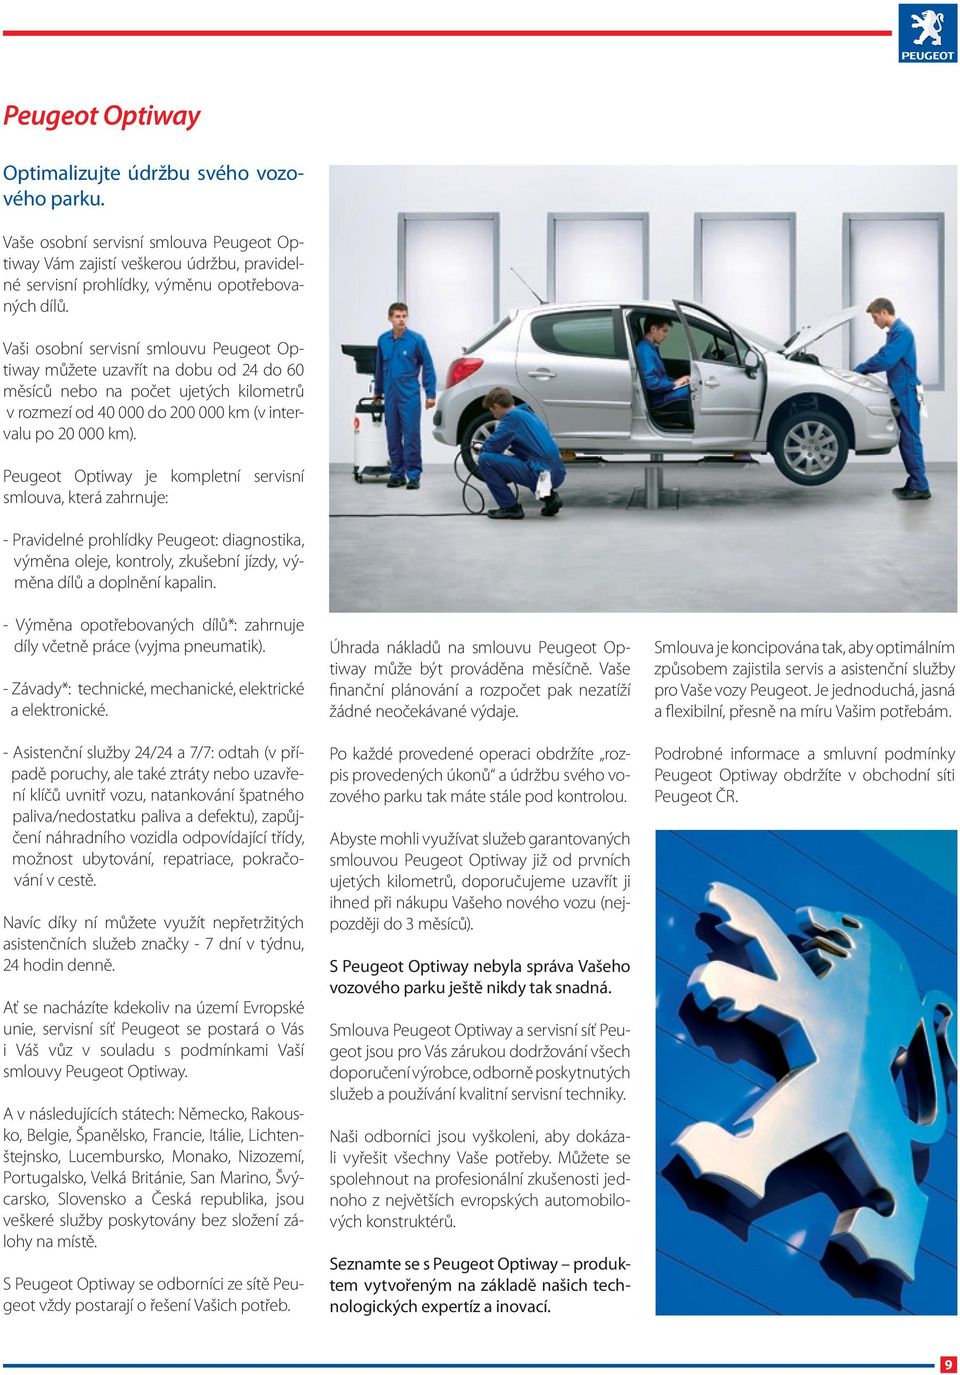 Peugeot Optiway je kompletní servisní smlouva, která zahrnuje: - Pravidelné prohlídky Peugeot: diagnostika, výměna oleje, kontroly, zkušební jízdy, výměna dílů a doplnění kapalin.